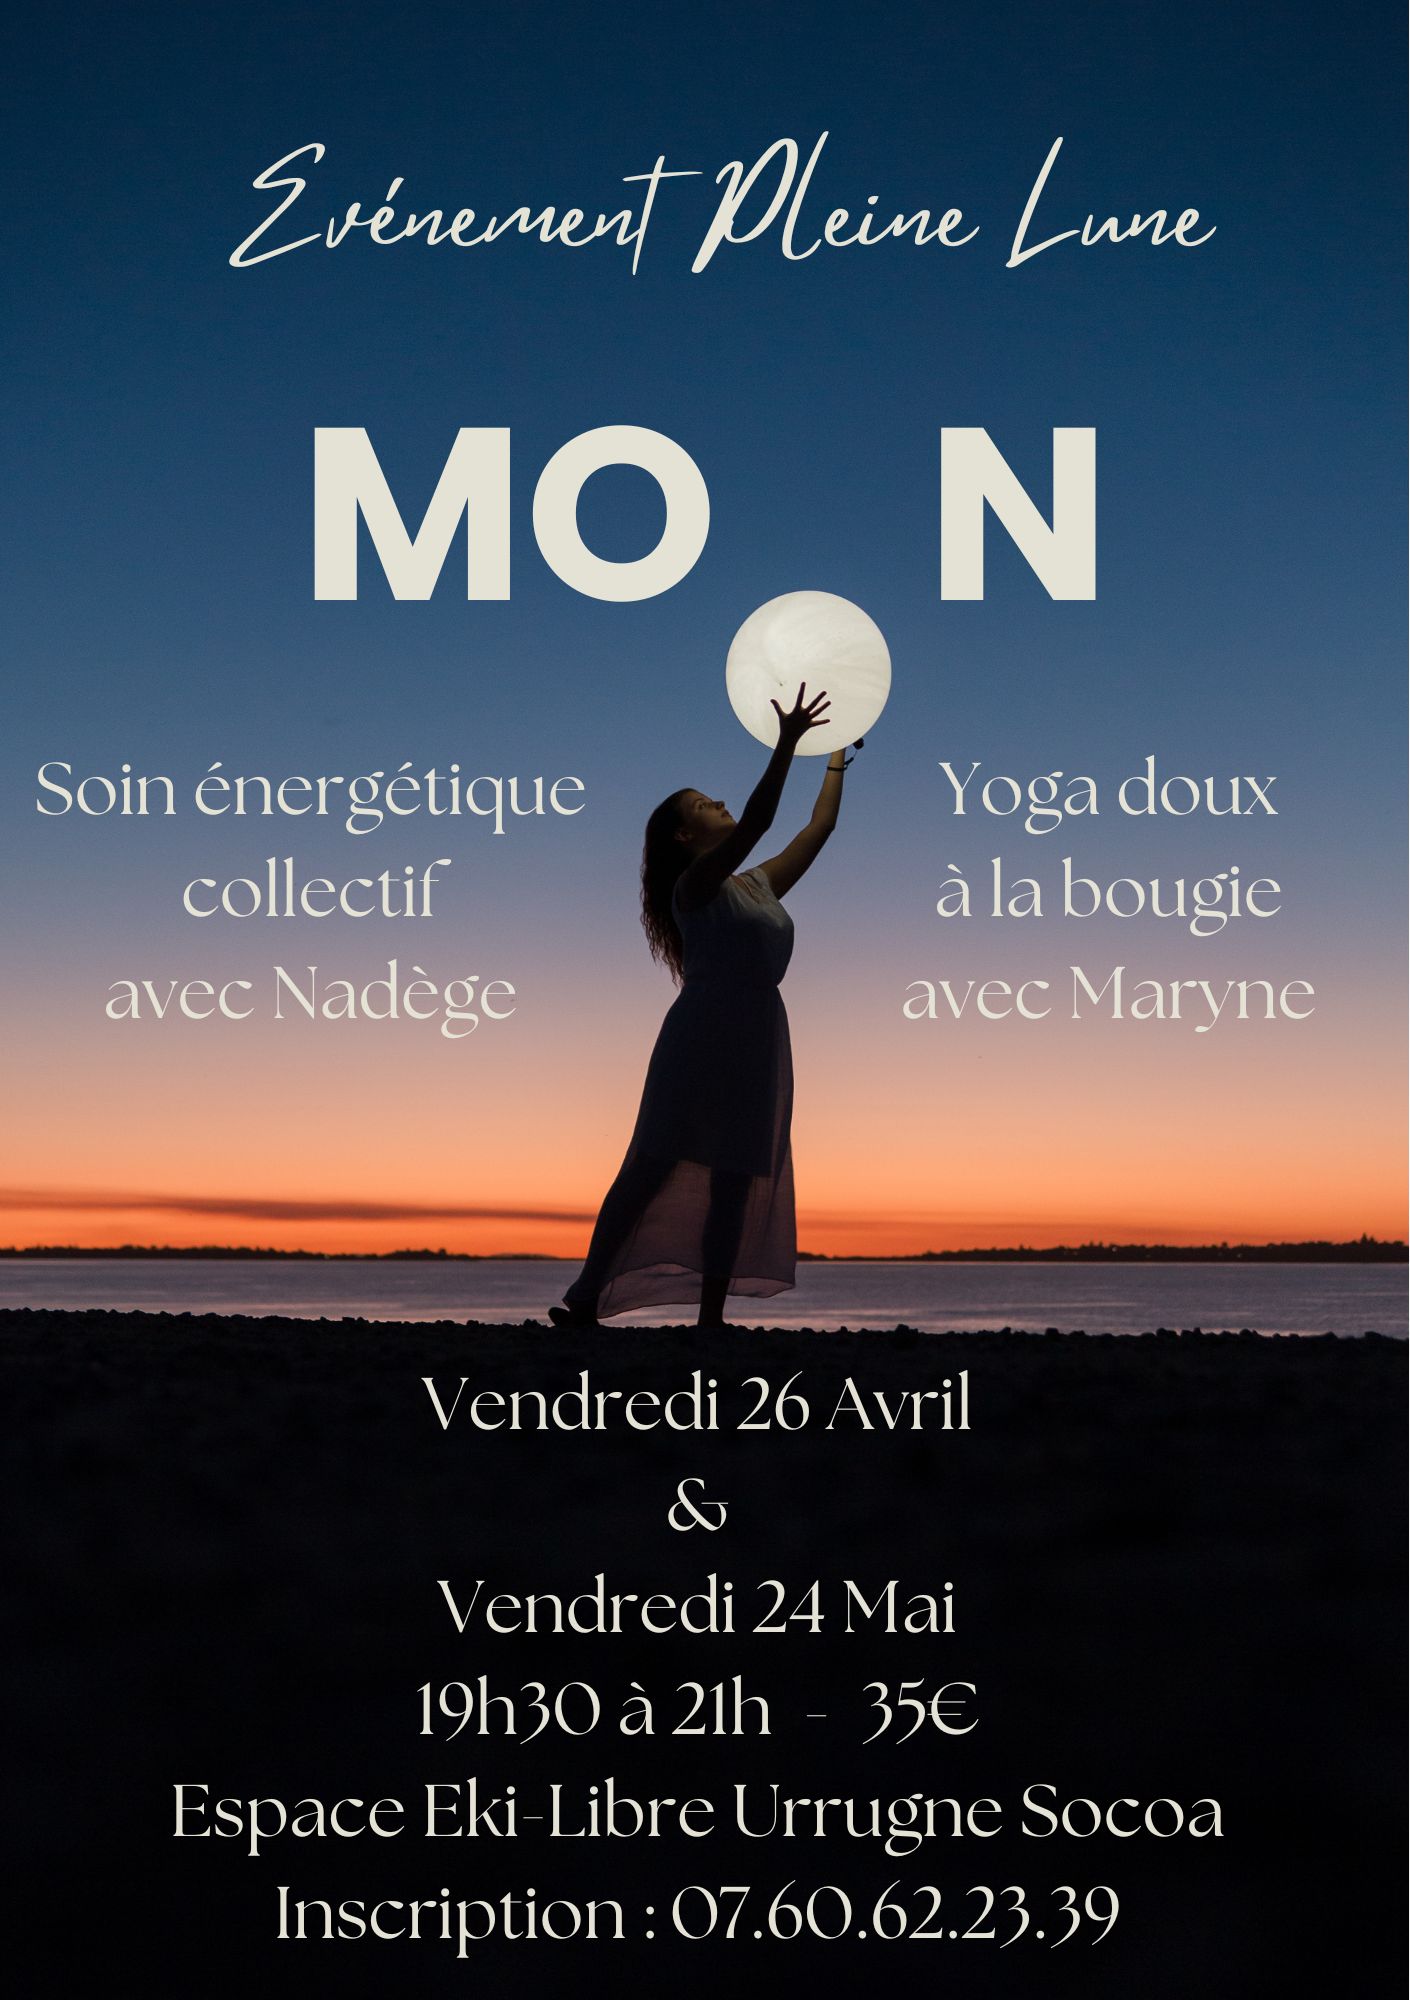 Yoga et soin énergétique collectif – vendredi 26 Avril 19h30